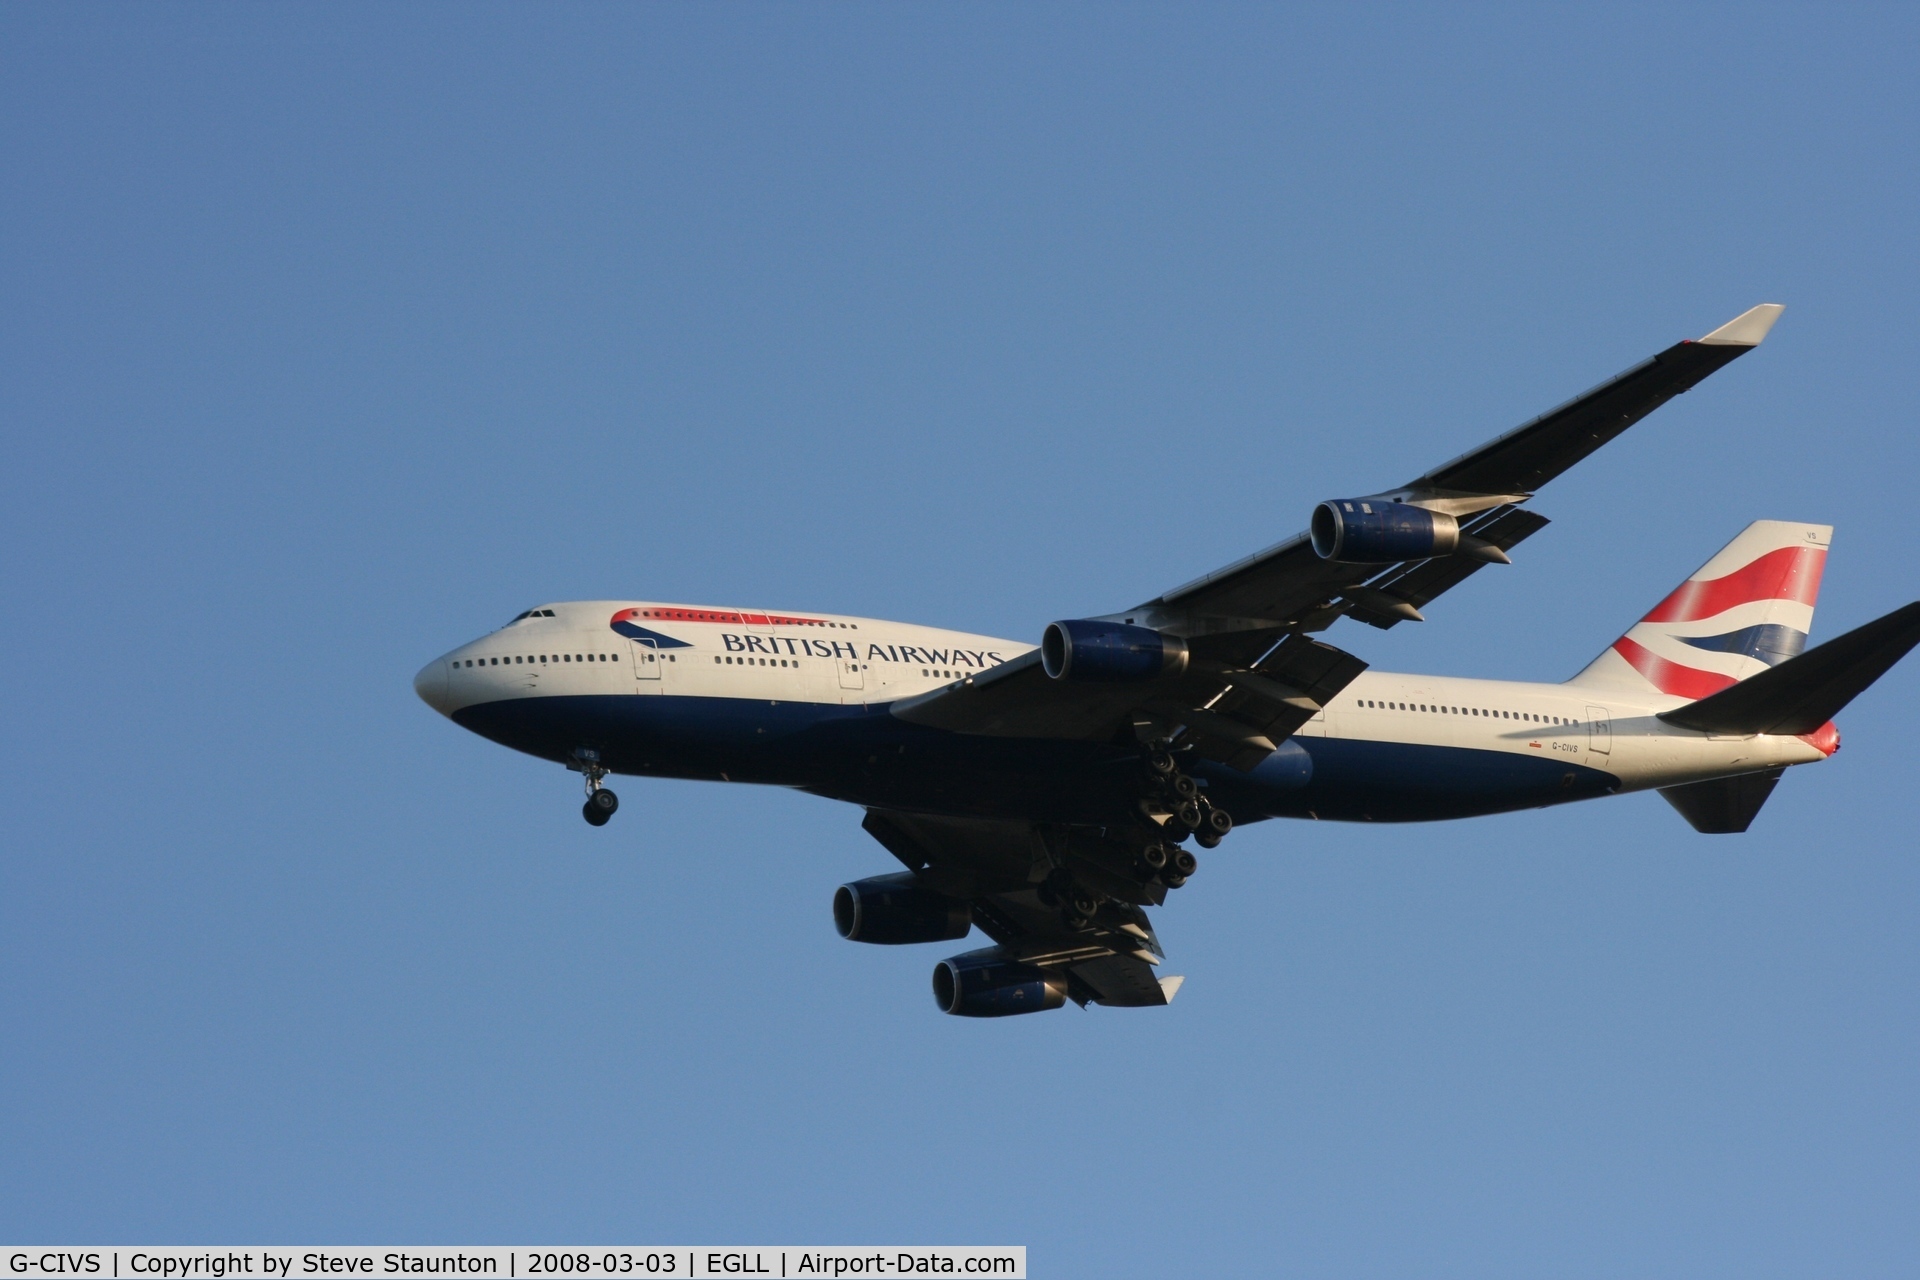 G-CIVS, 1998 Boeing 747-436 C/N 28851, Taken at Heathrow Airport March 2008